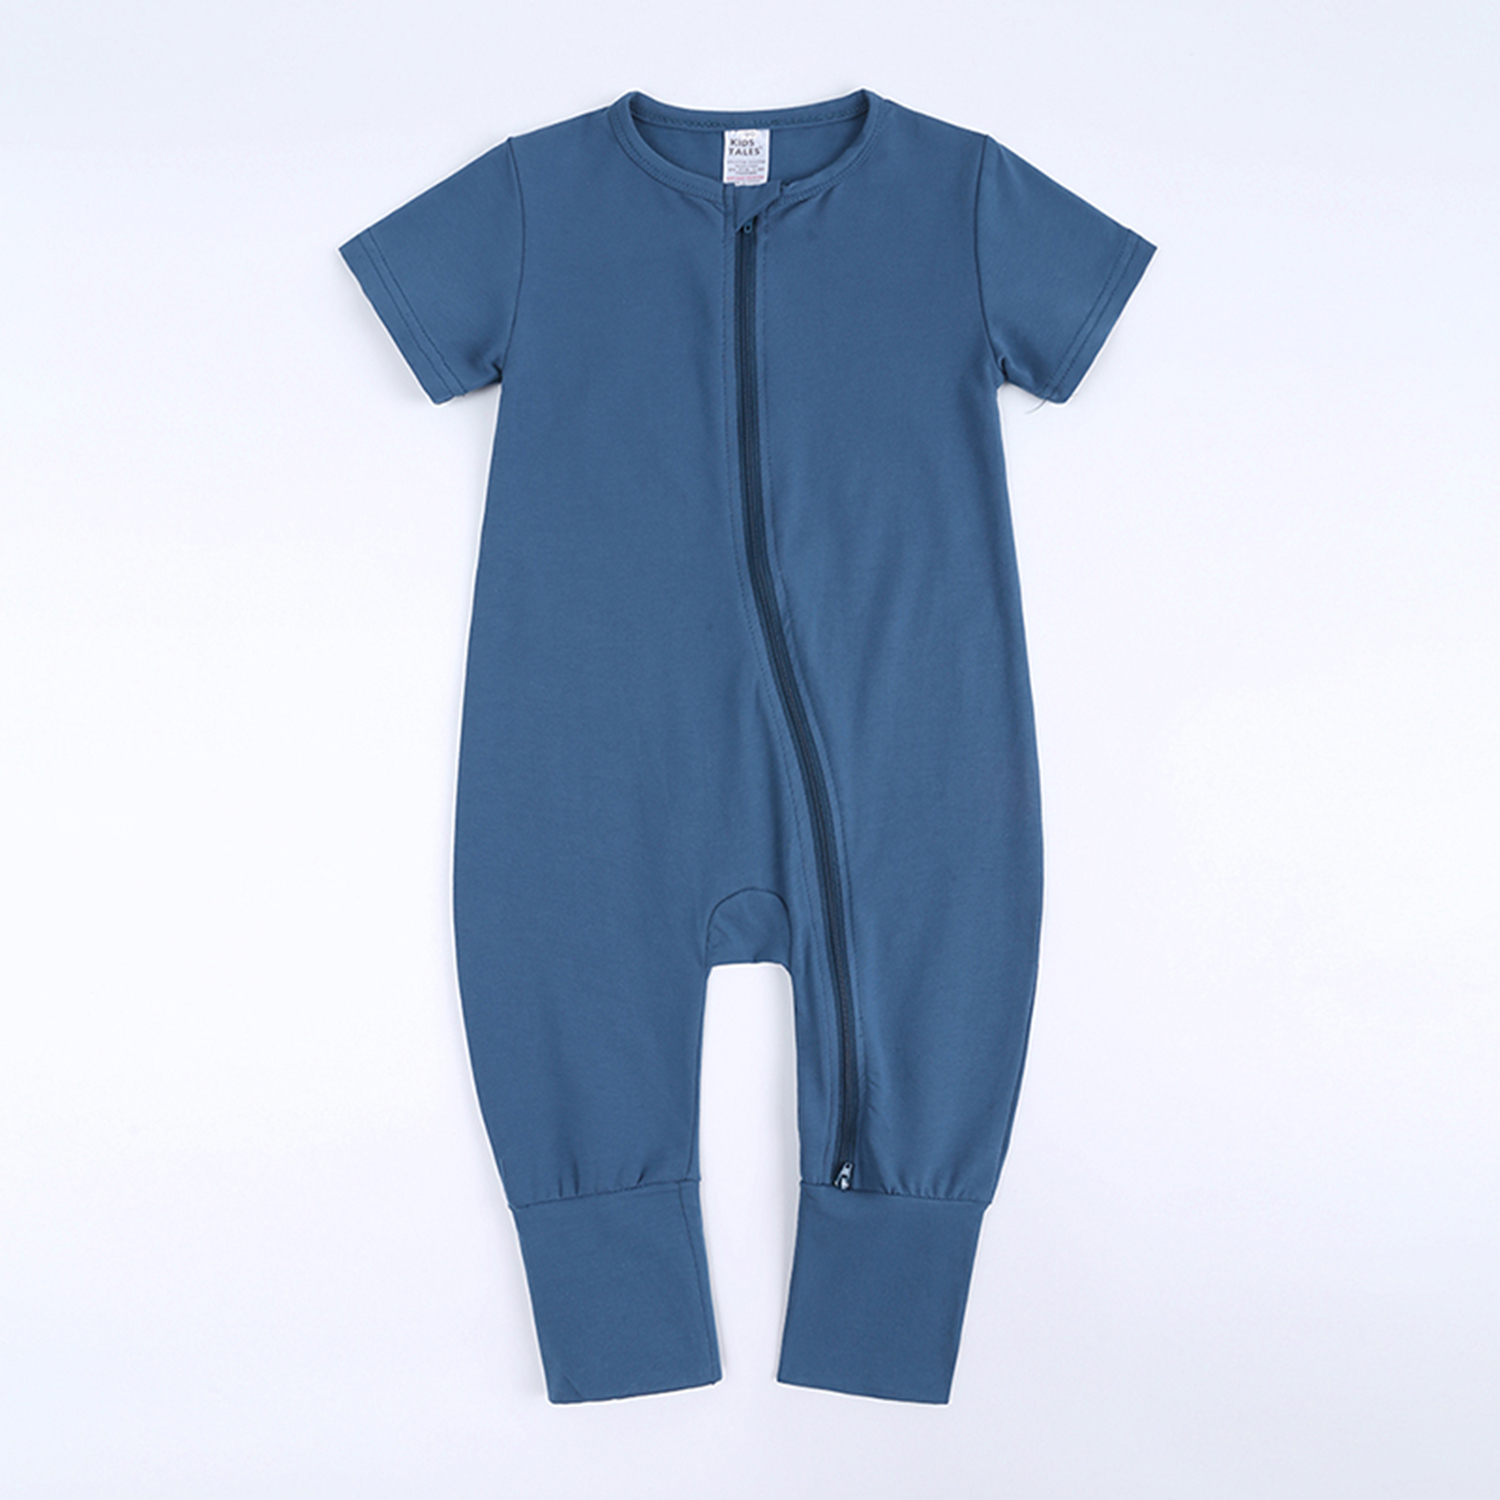 BEST BABY ROMPER BLUE 6-12M Cotton Double Zipper Infant Bodysuit Sleeper Boy